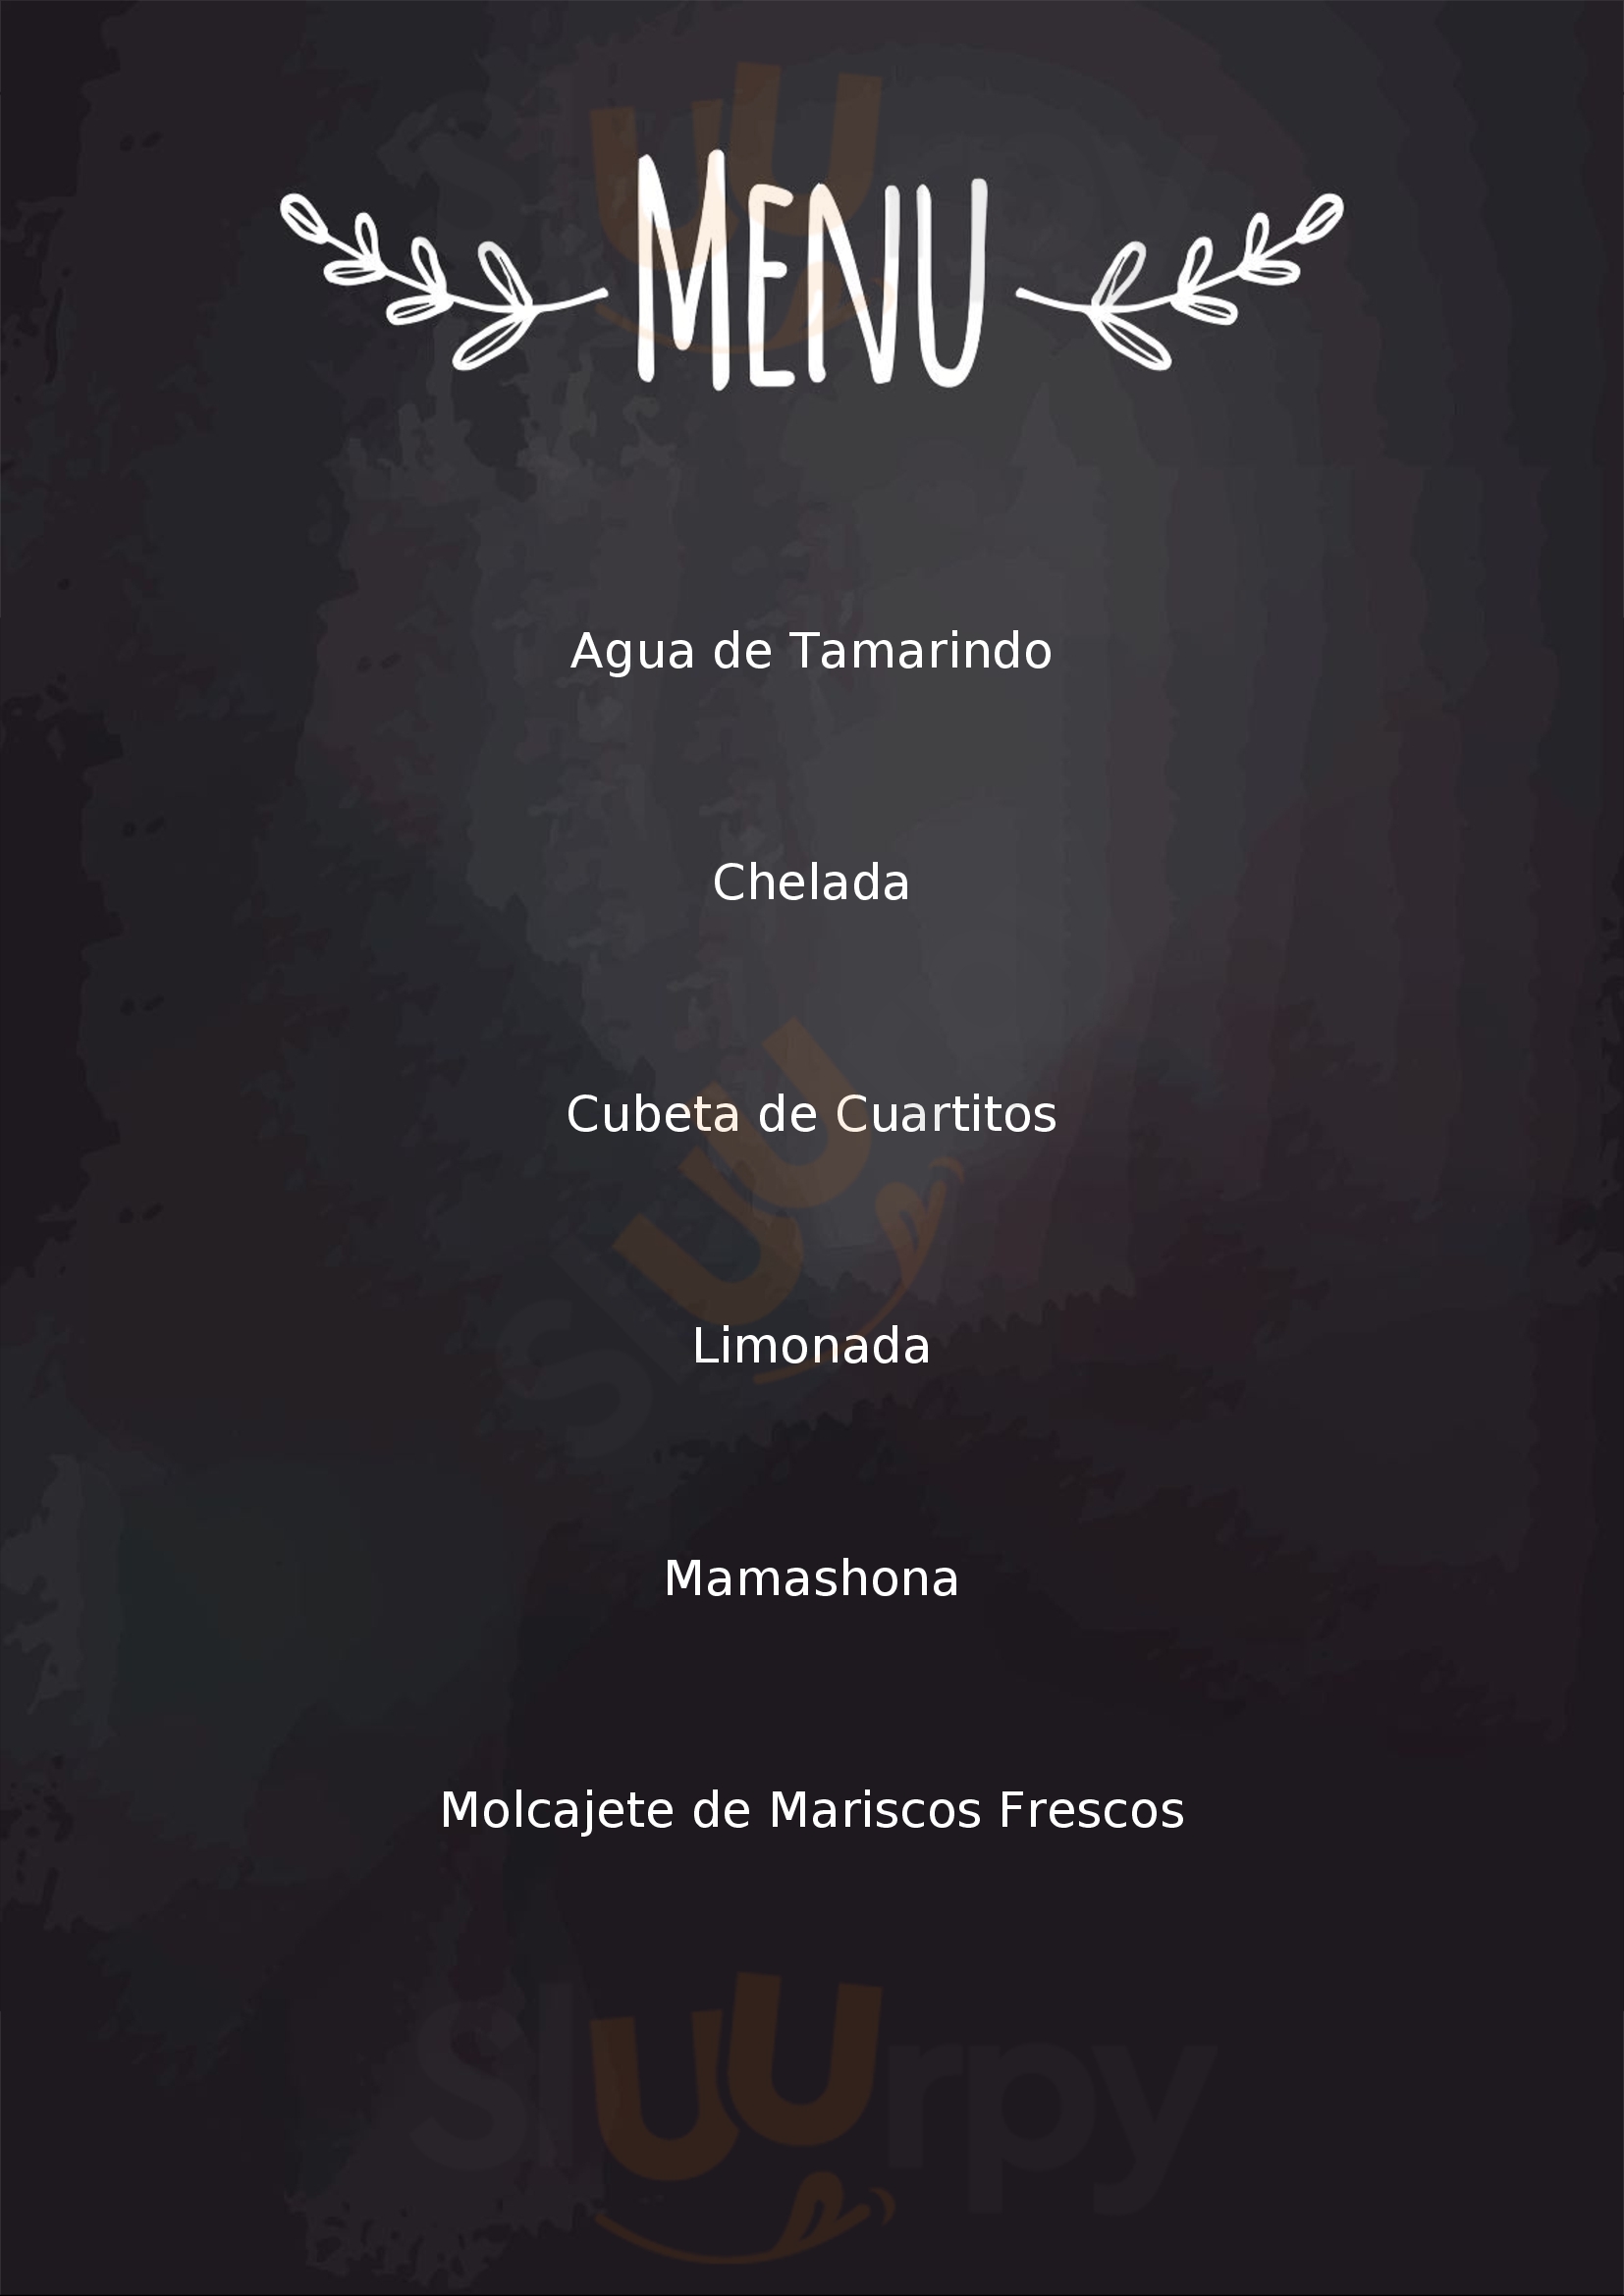 Ceviches La Palapita Hermosillo Menu - 1